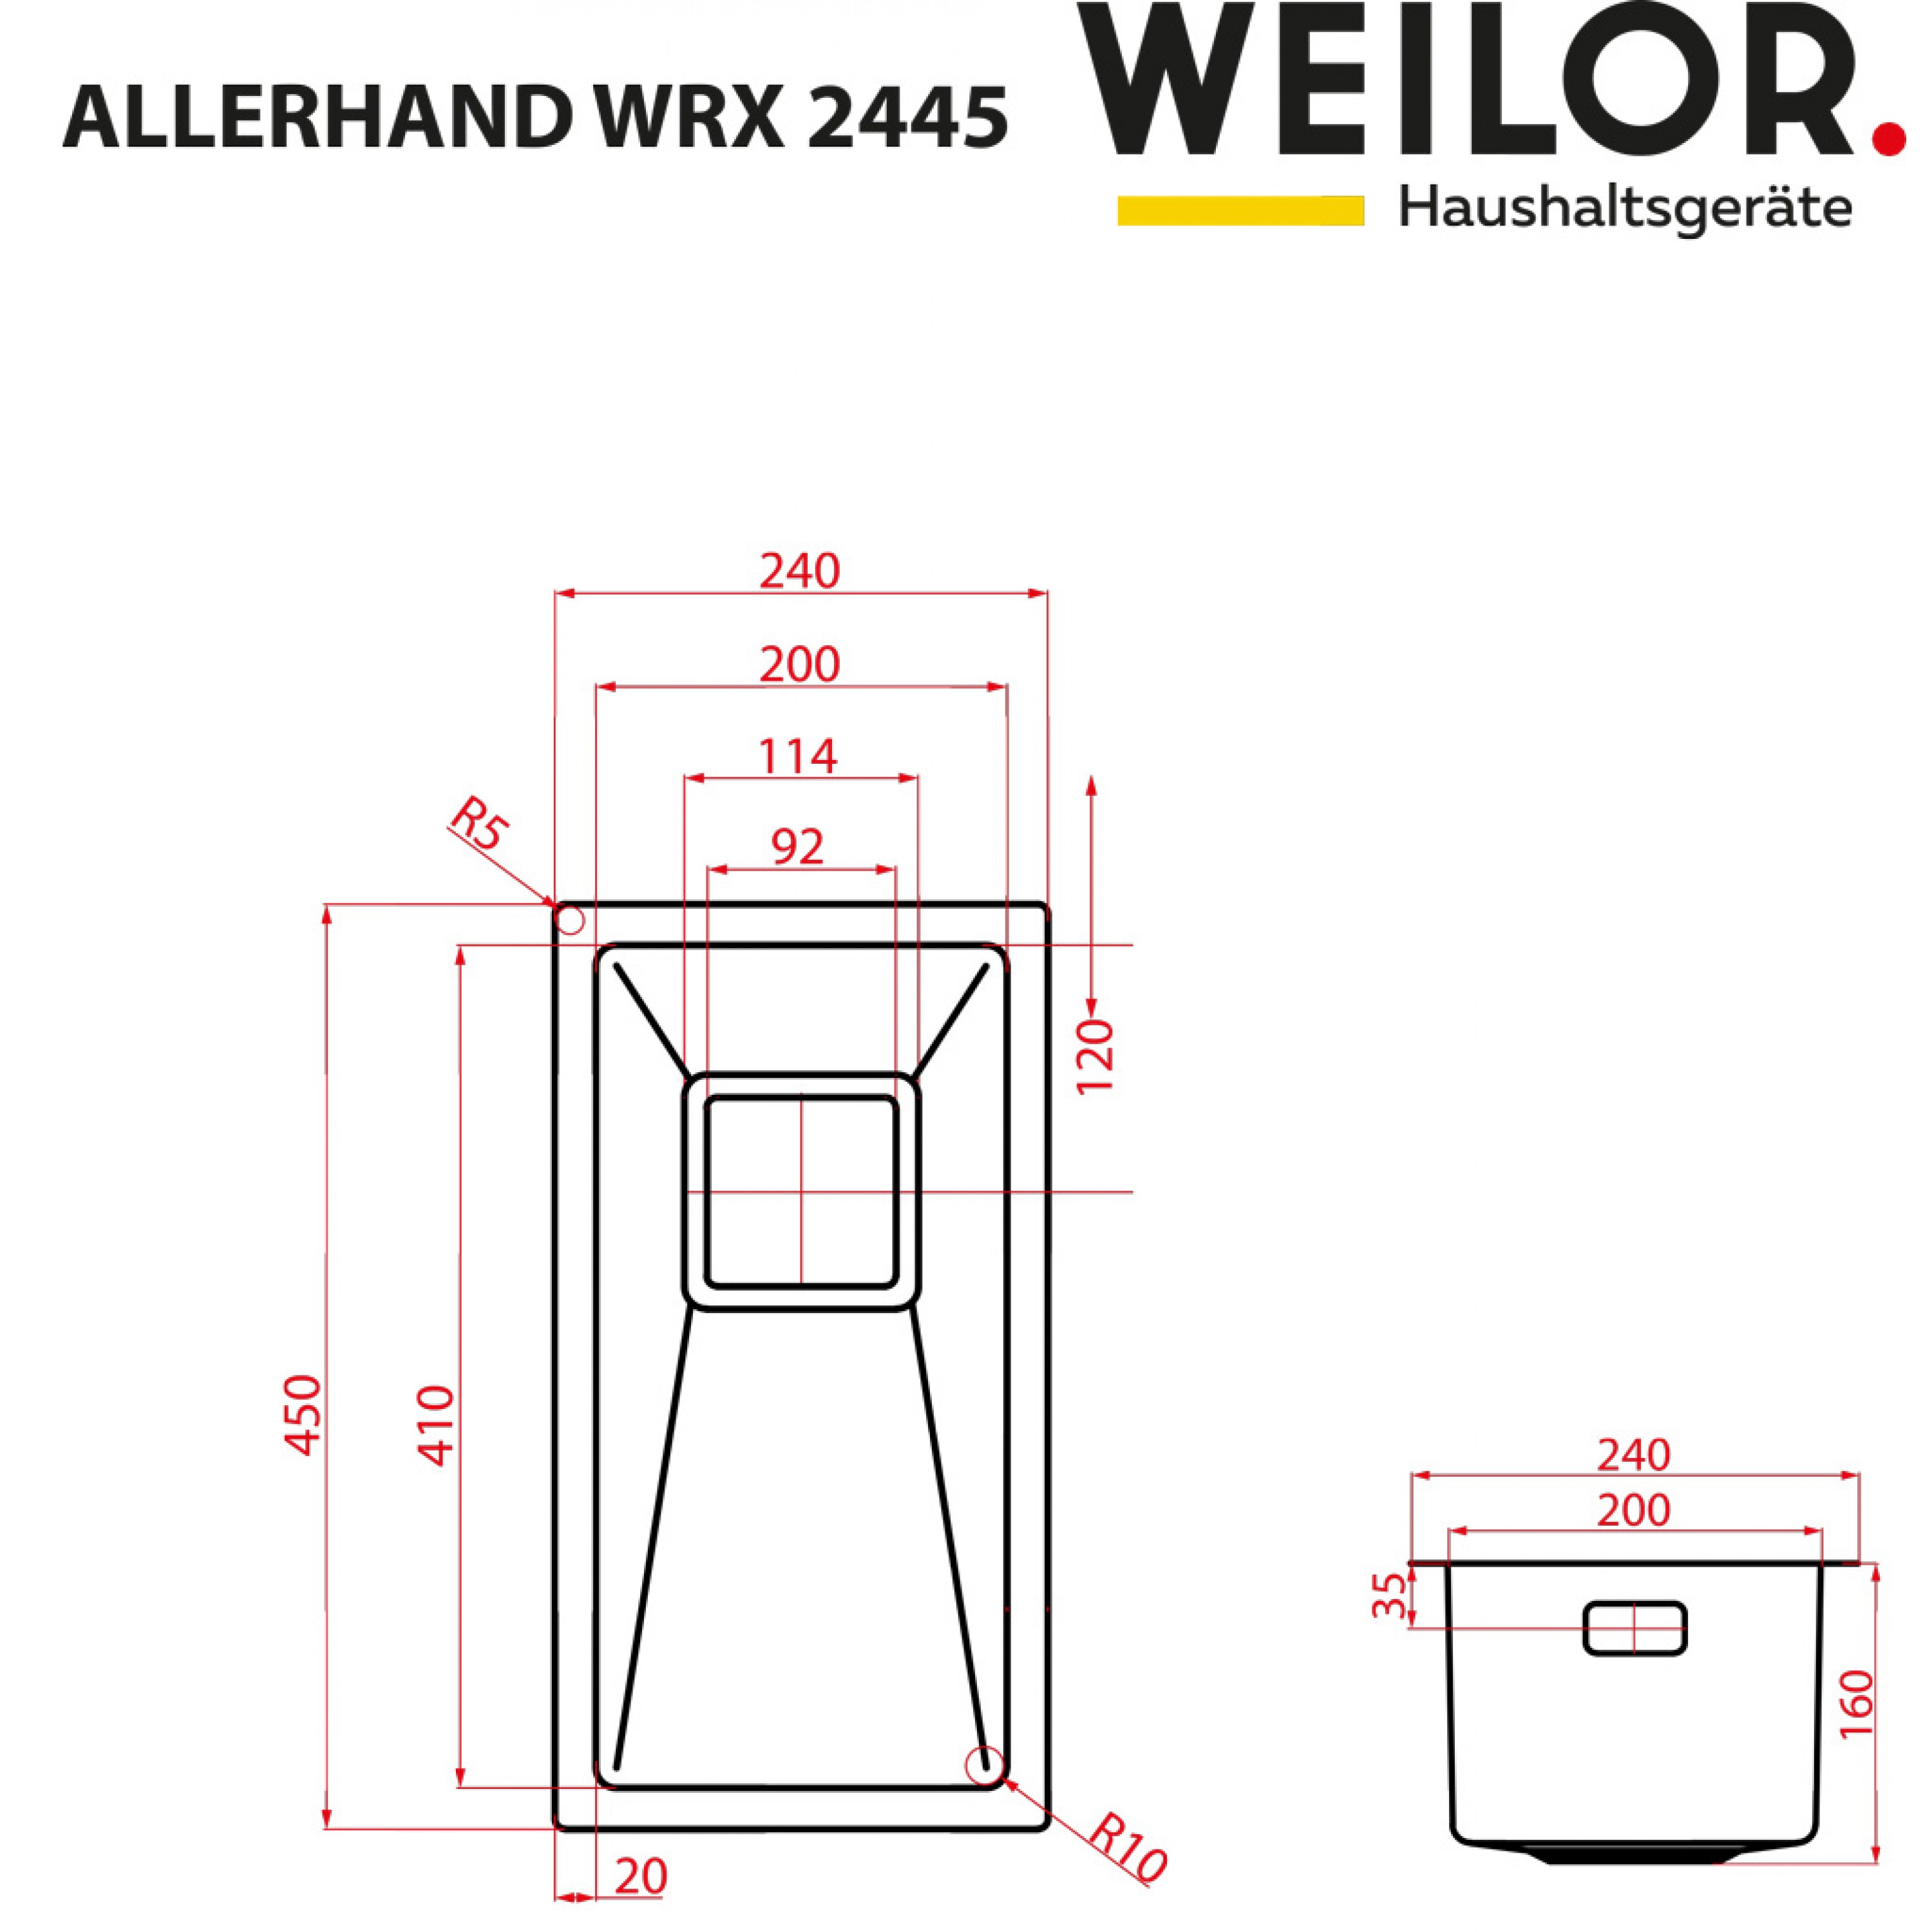 Weilor ALLERHAND WRX 2445 Габаритные размеры